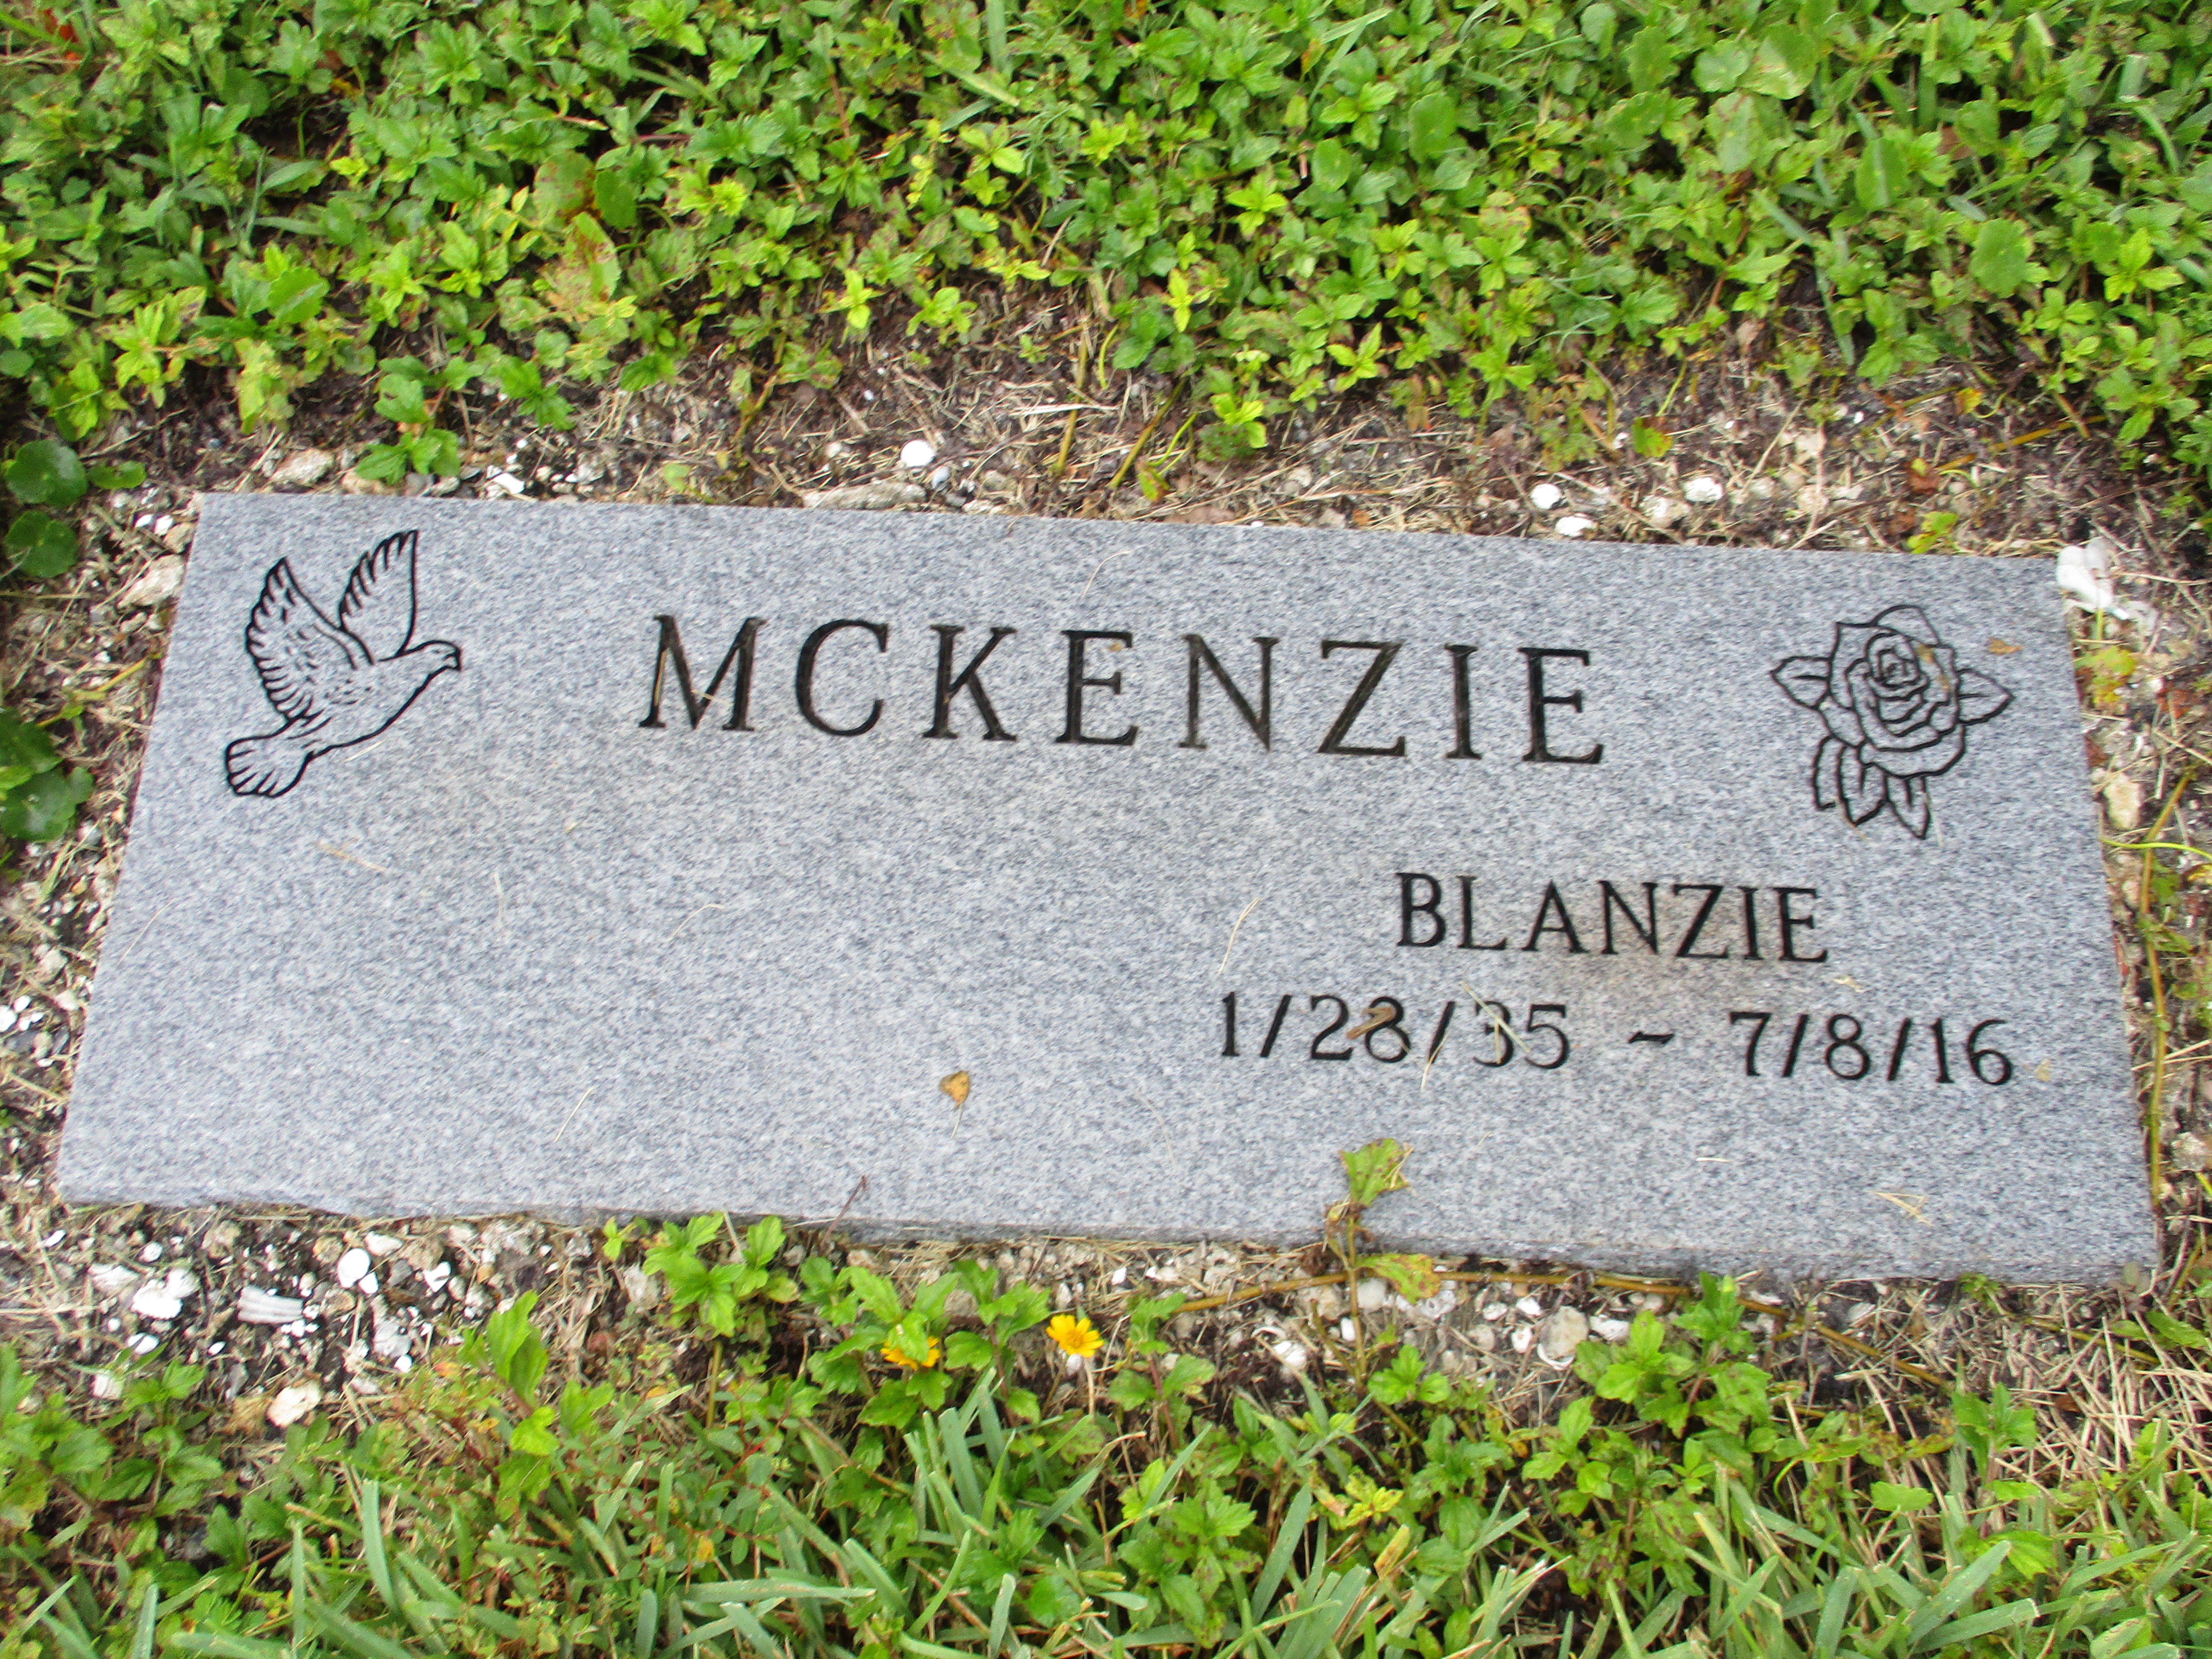 Blanzie McKenzie